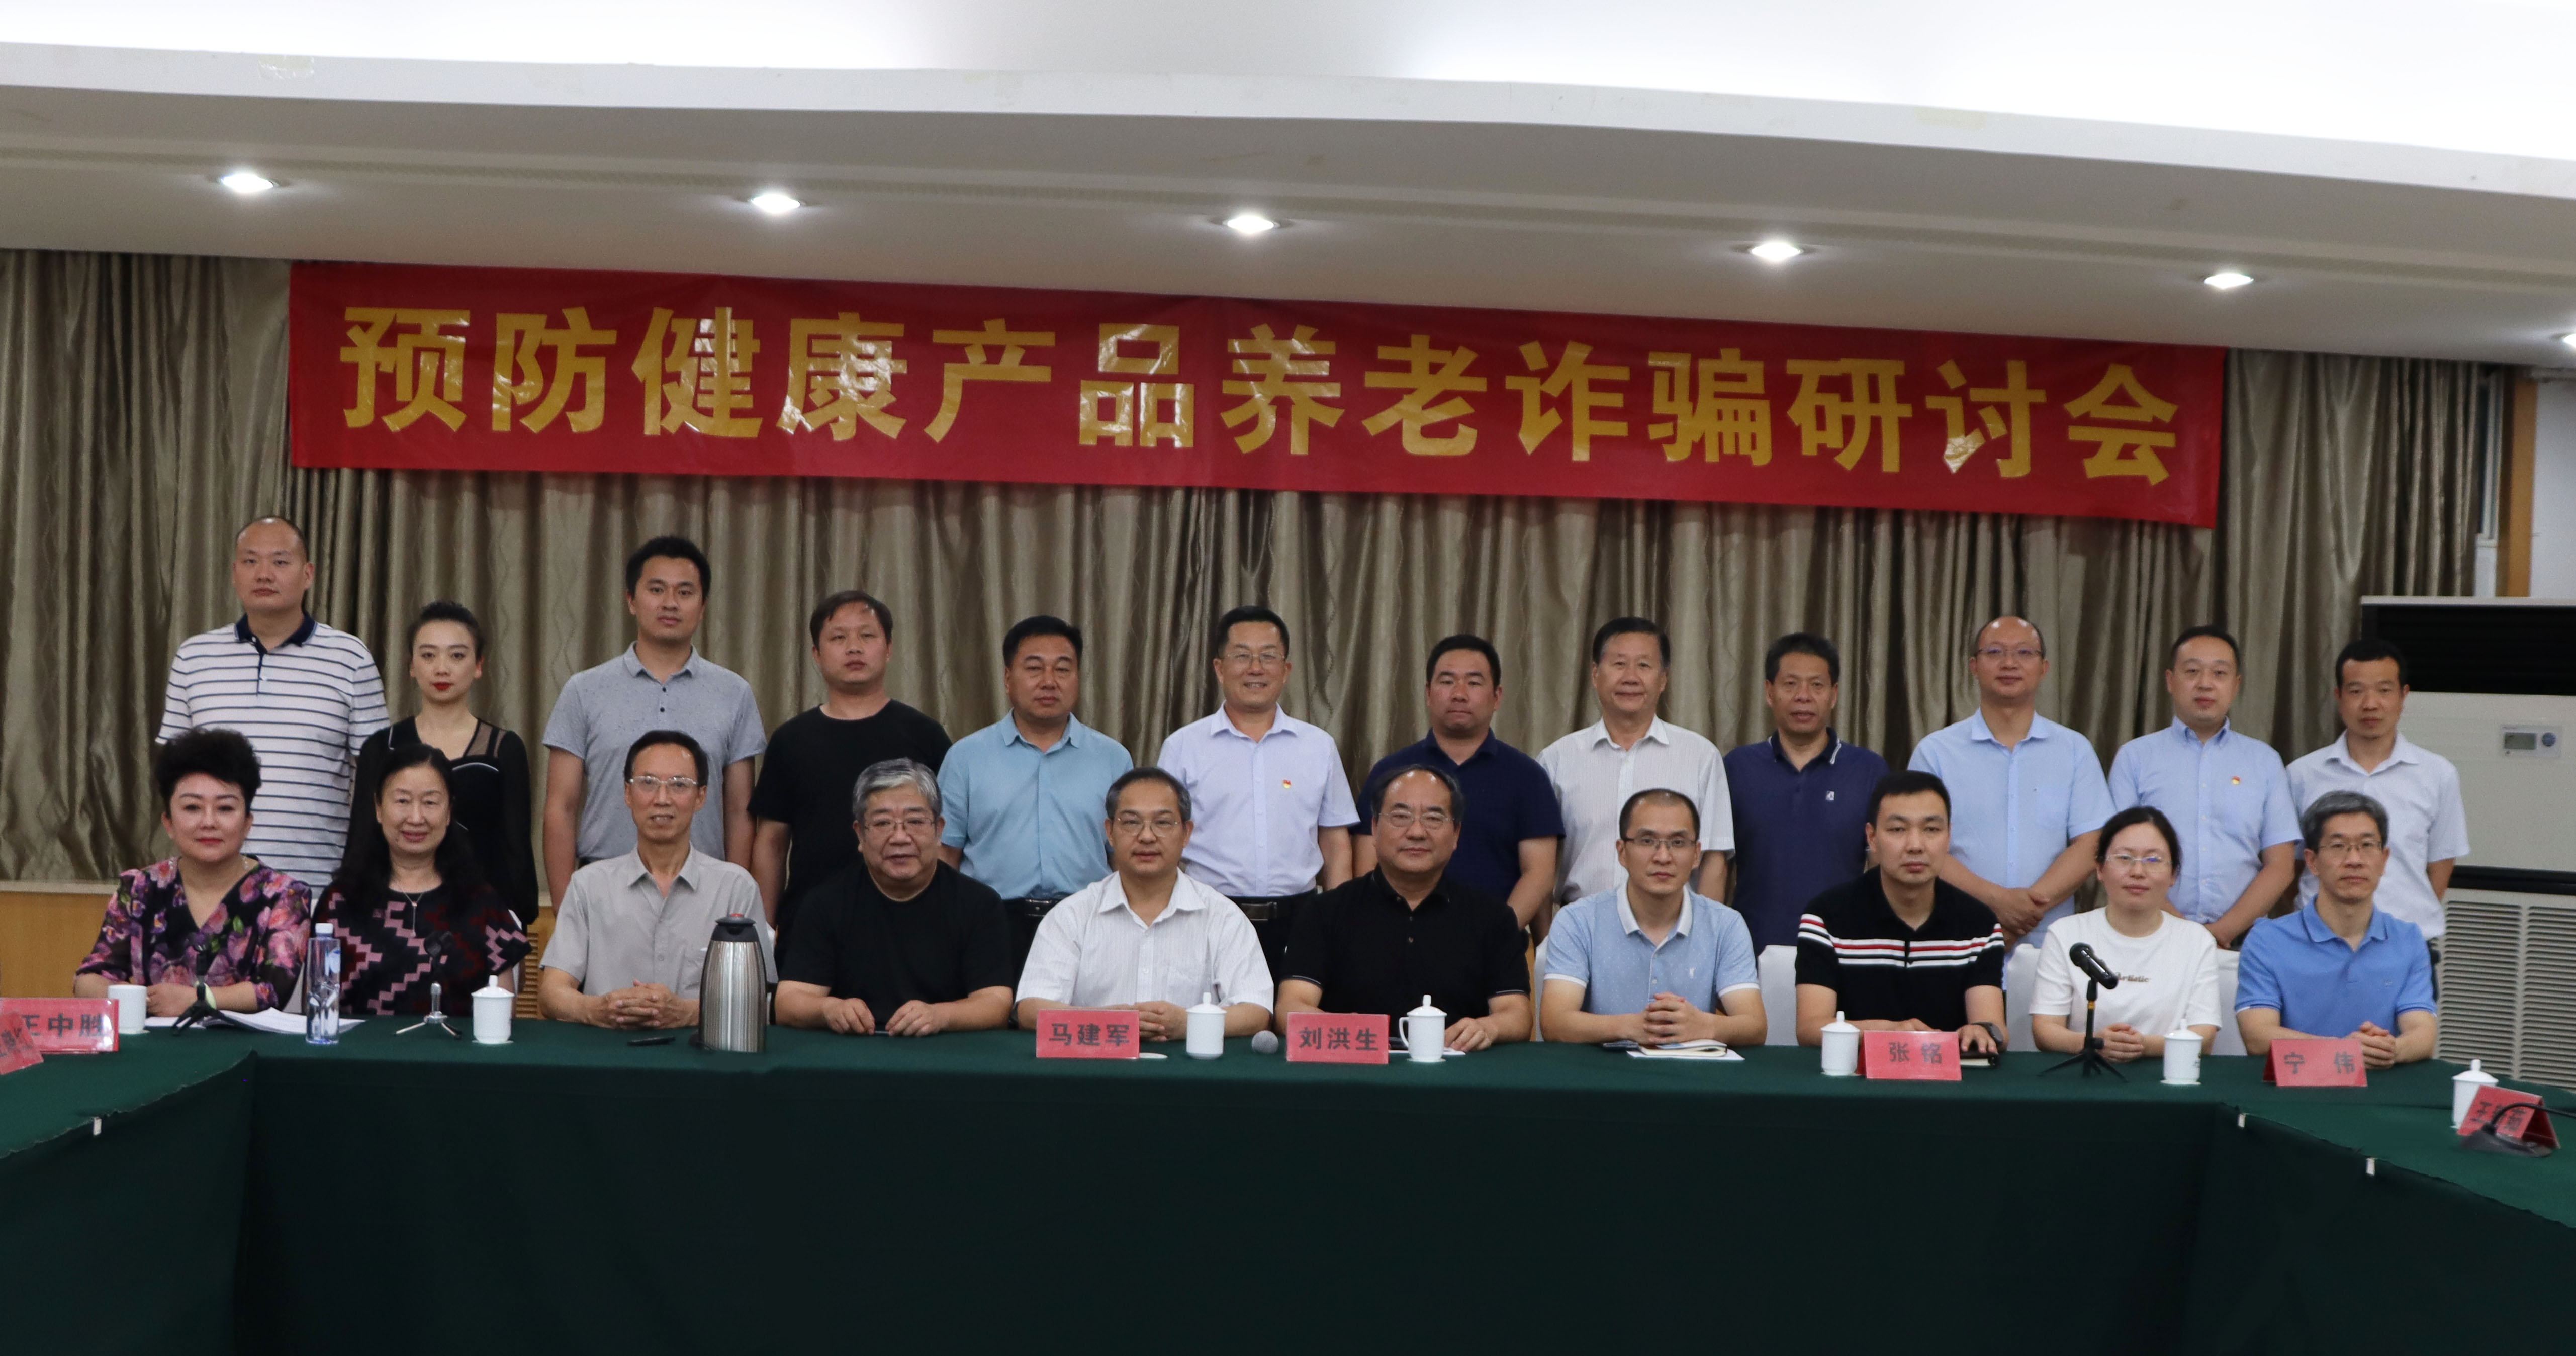 河南省营养保健协会在郑州召开预防健康产品诈骗研讨会